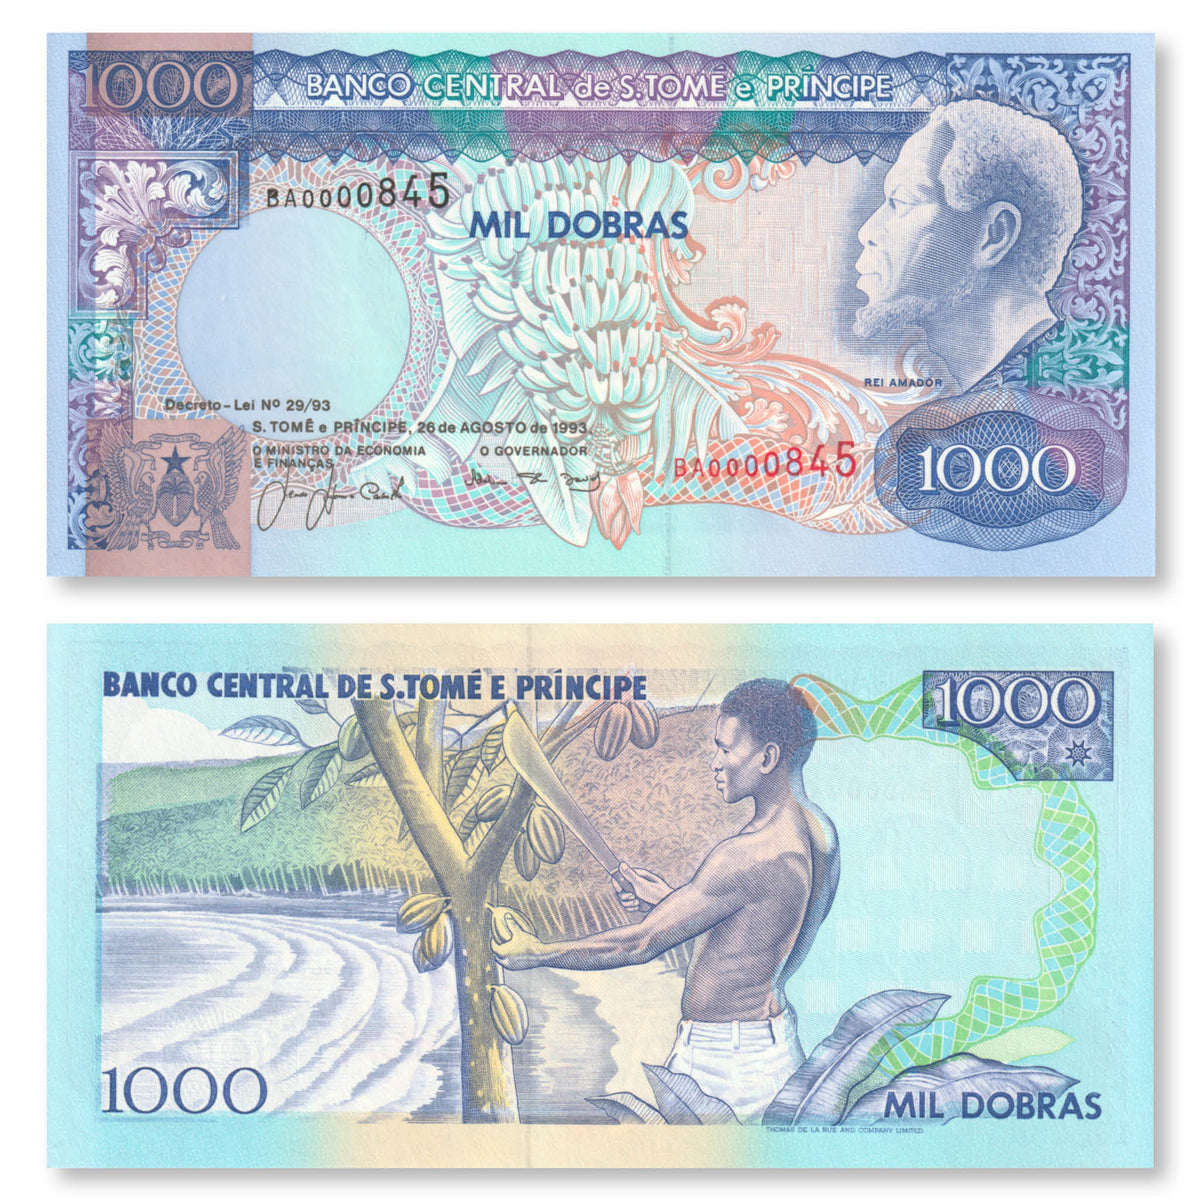 São Tomé & Príncipe 1000 Dobras, 1993, B302a, P64, UNC - Robert's World Money - World Banknotes